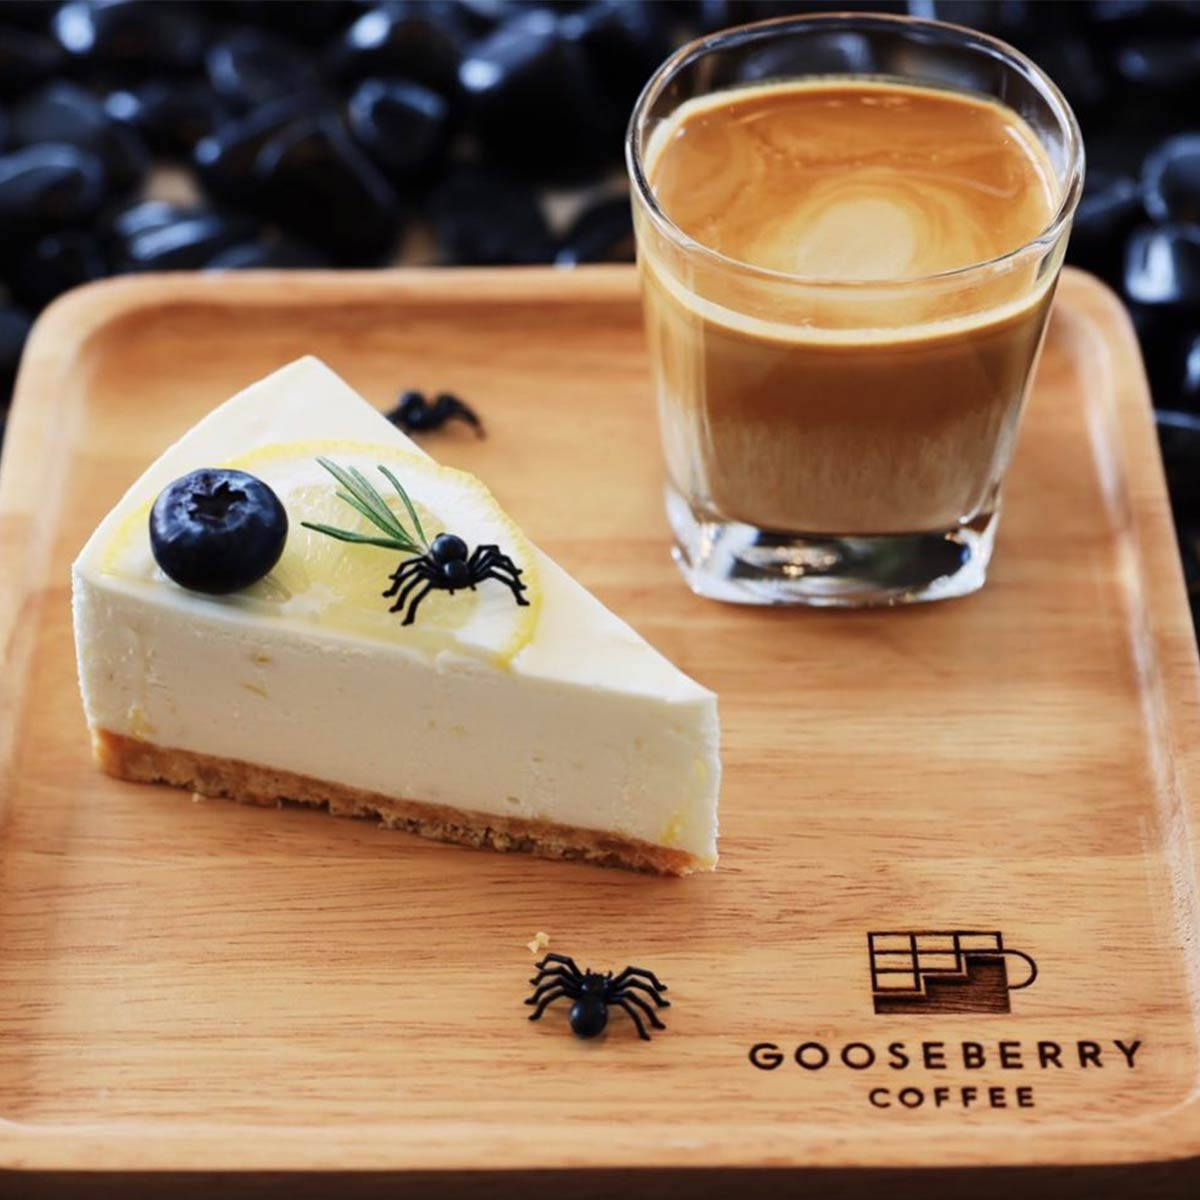 5. Gooseberry coffee 2